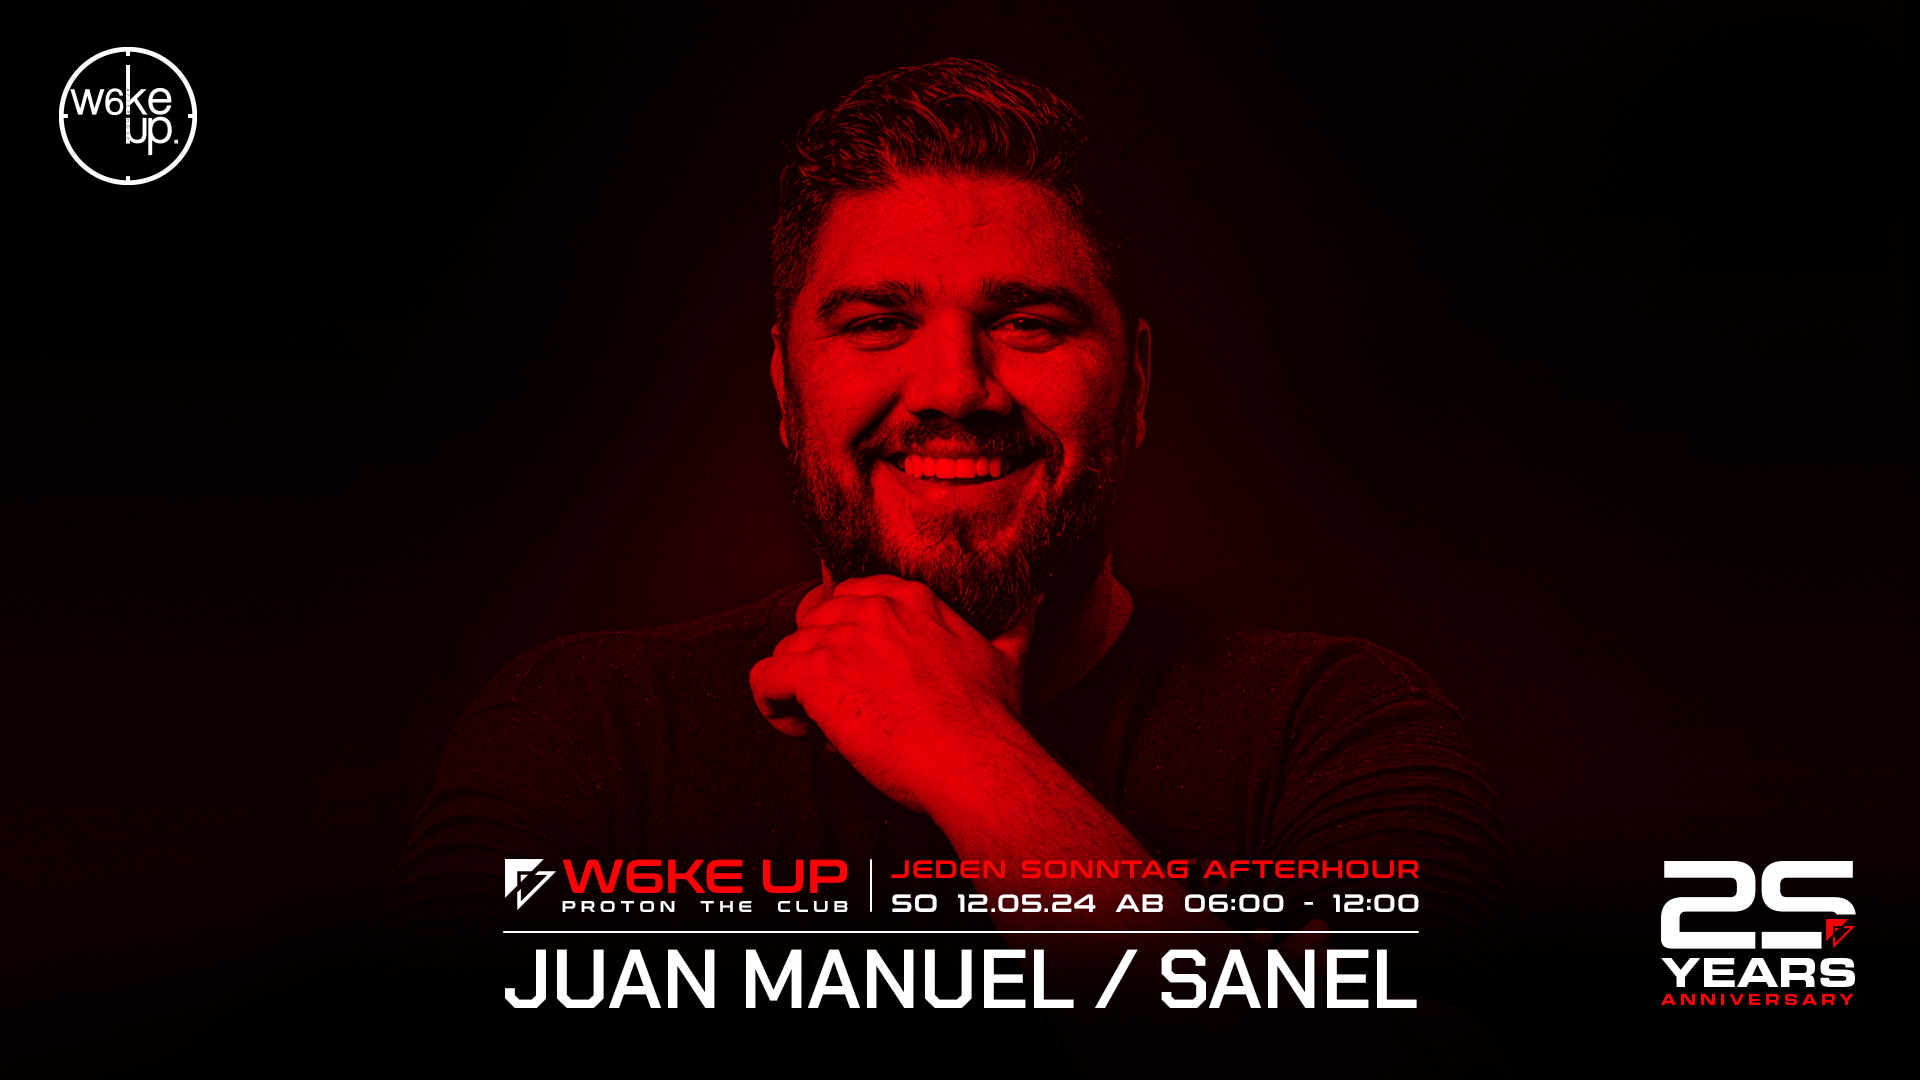 W6ke UP Afterhour with JUAN MANUEL & Sanel - Página frontal